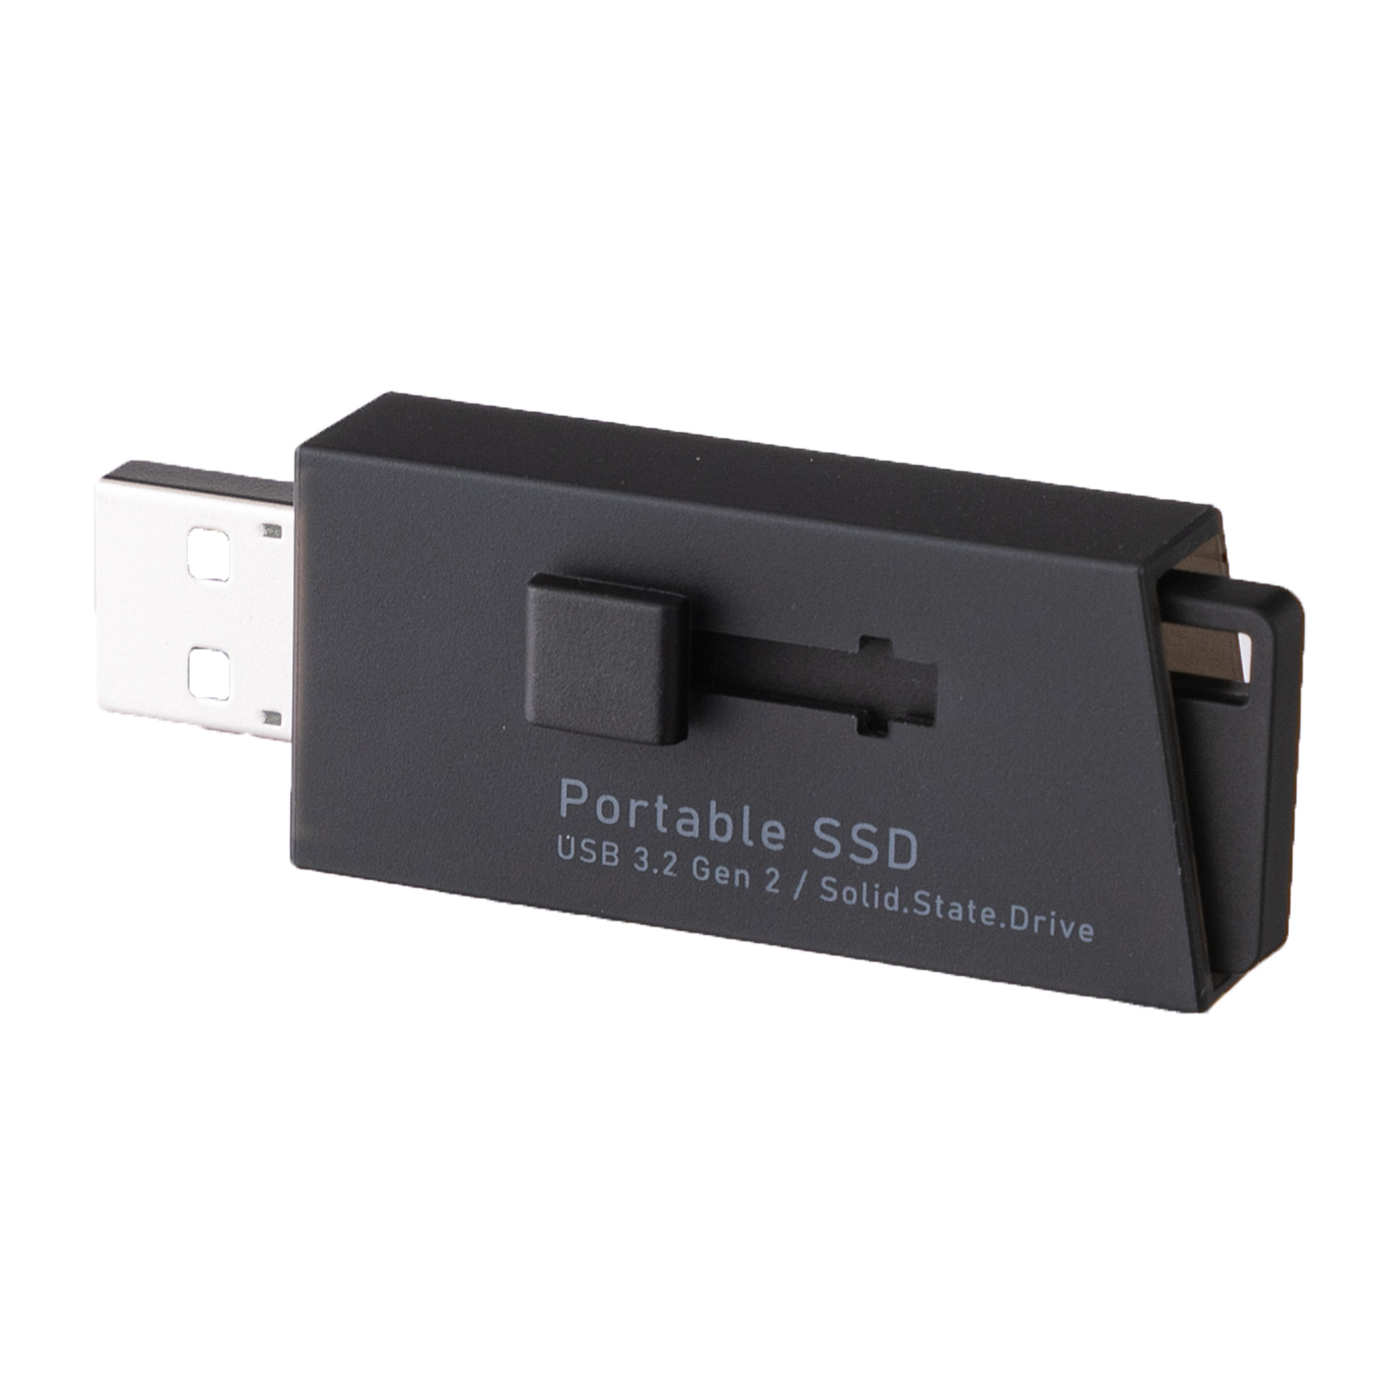 即納送料無料! アイ・オー・データ USB 3.2 Gen 2対応 高速モデル ポータブルSSD 1TB 日本メーカー SSPF-USC1T